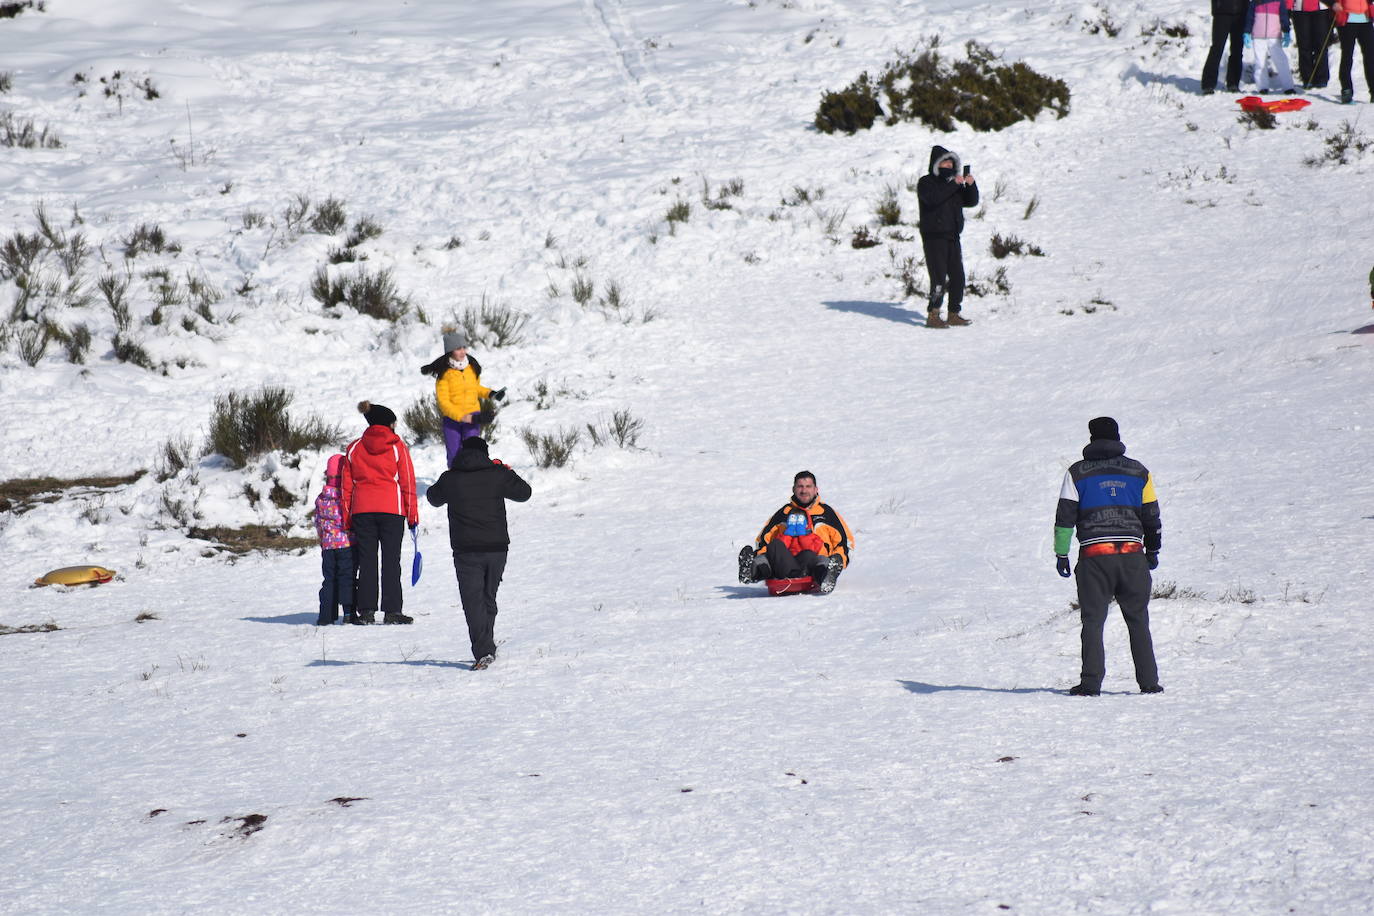 Fotos: Una improvisada pista de esquí en el Golobar